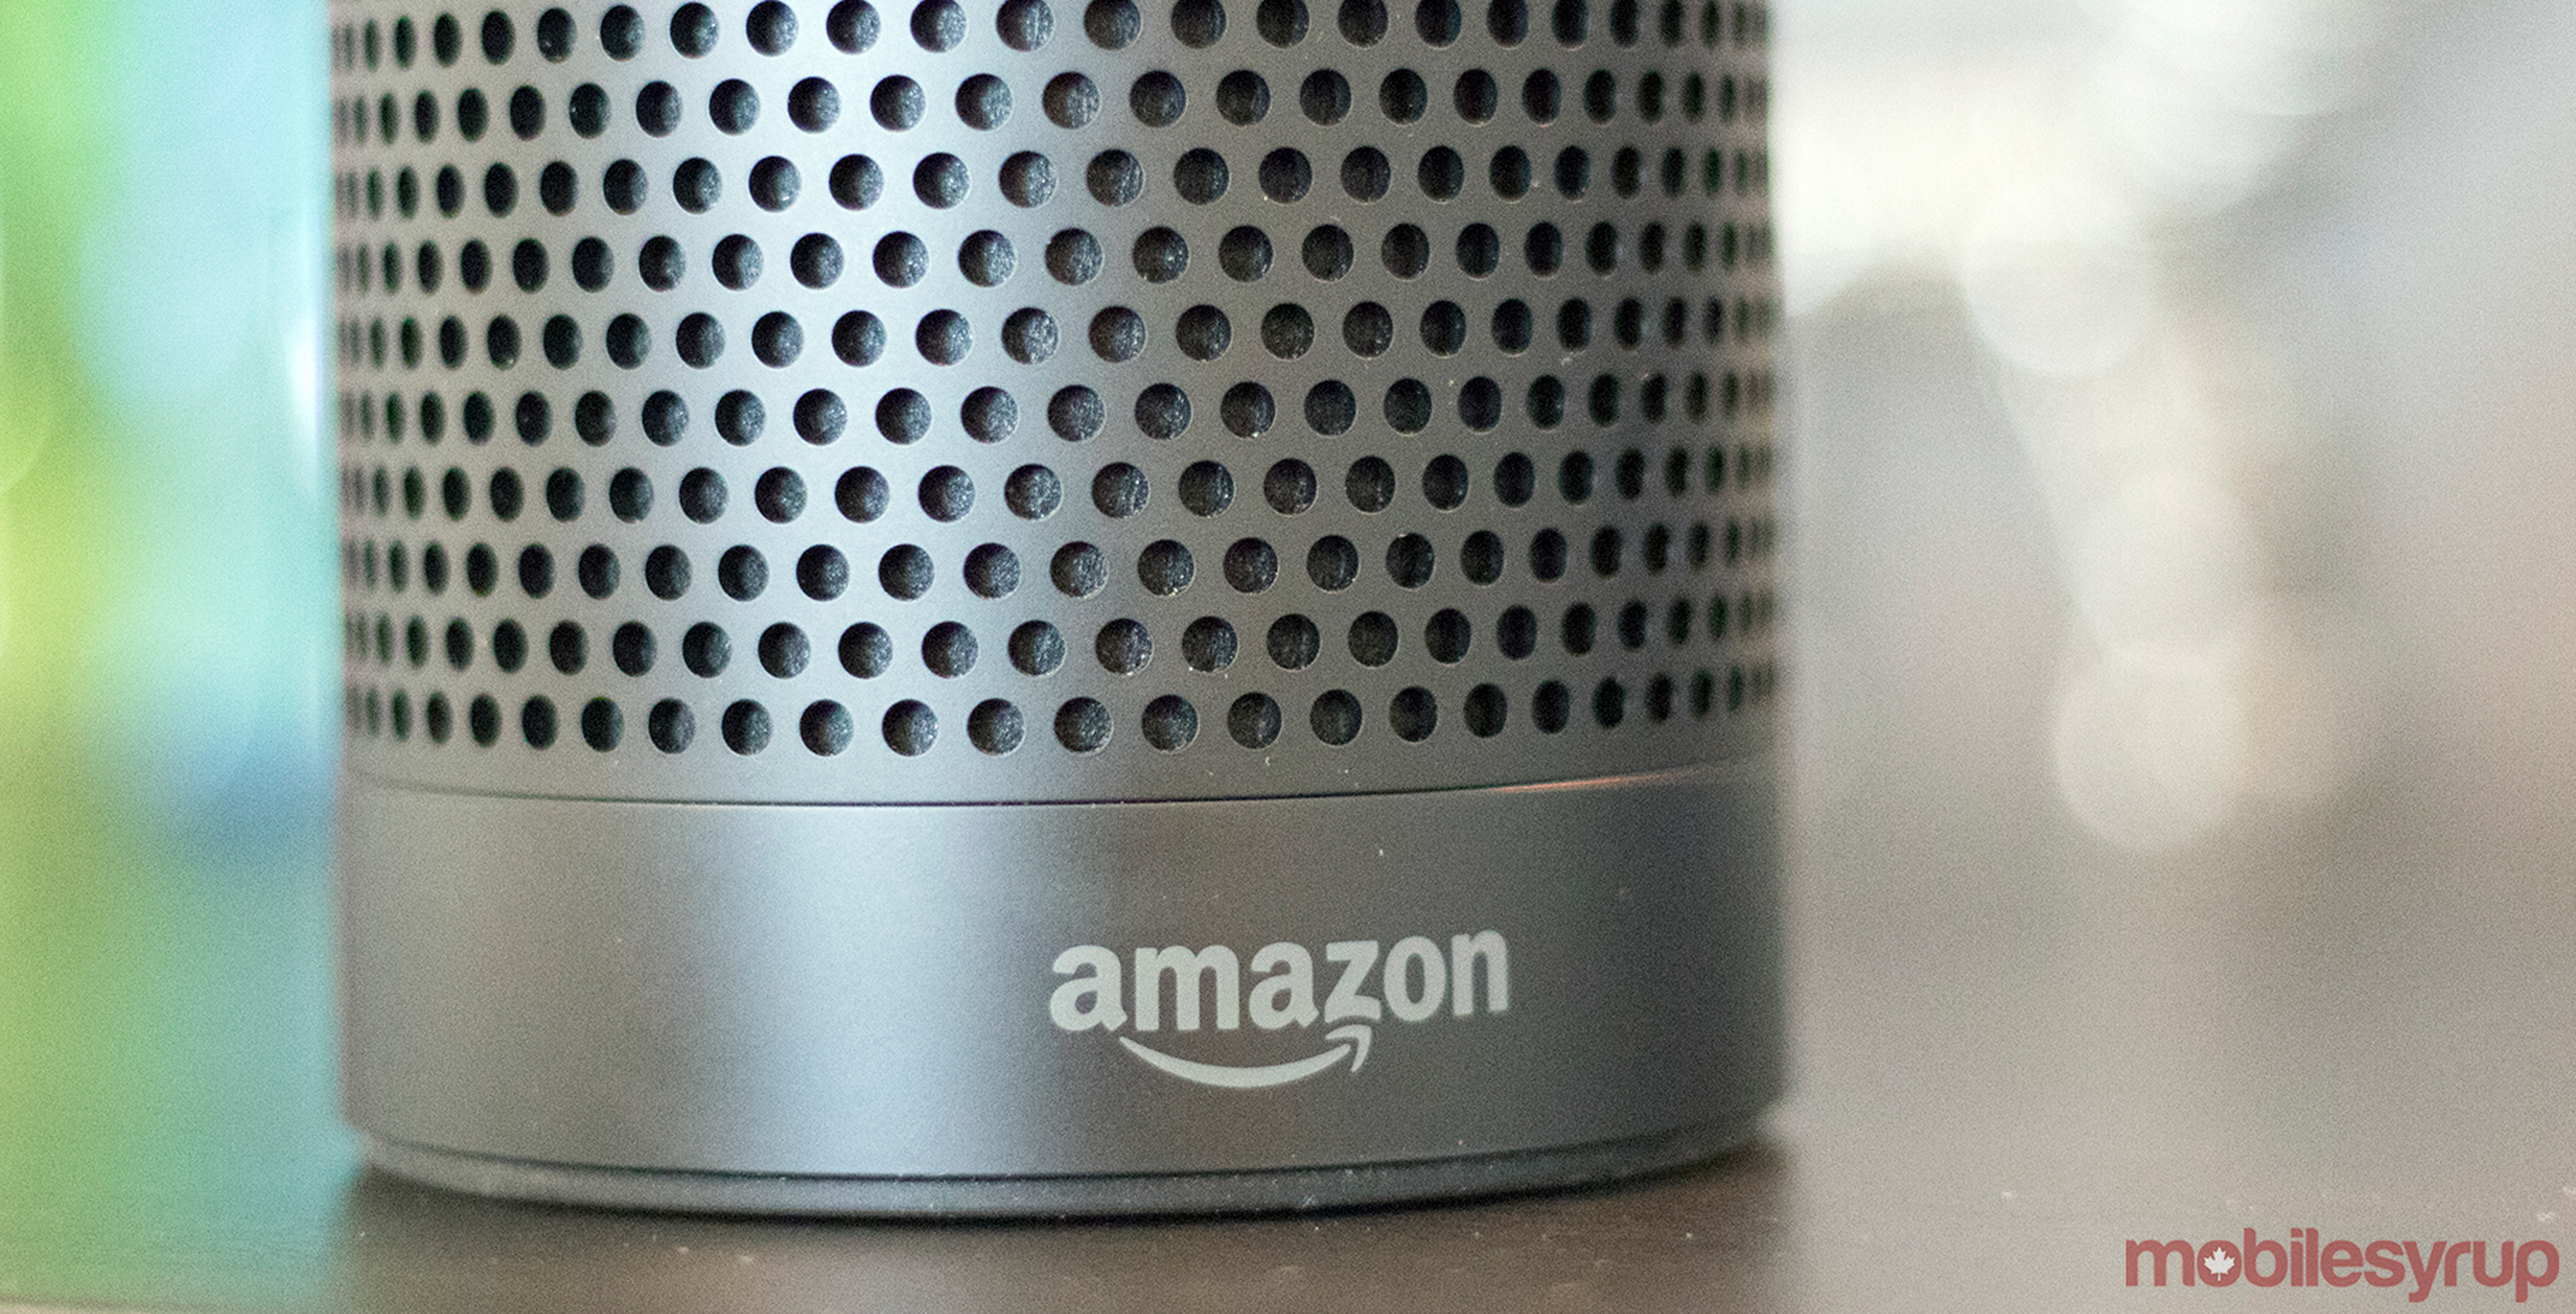 Amazon Echo front